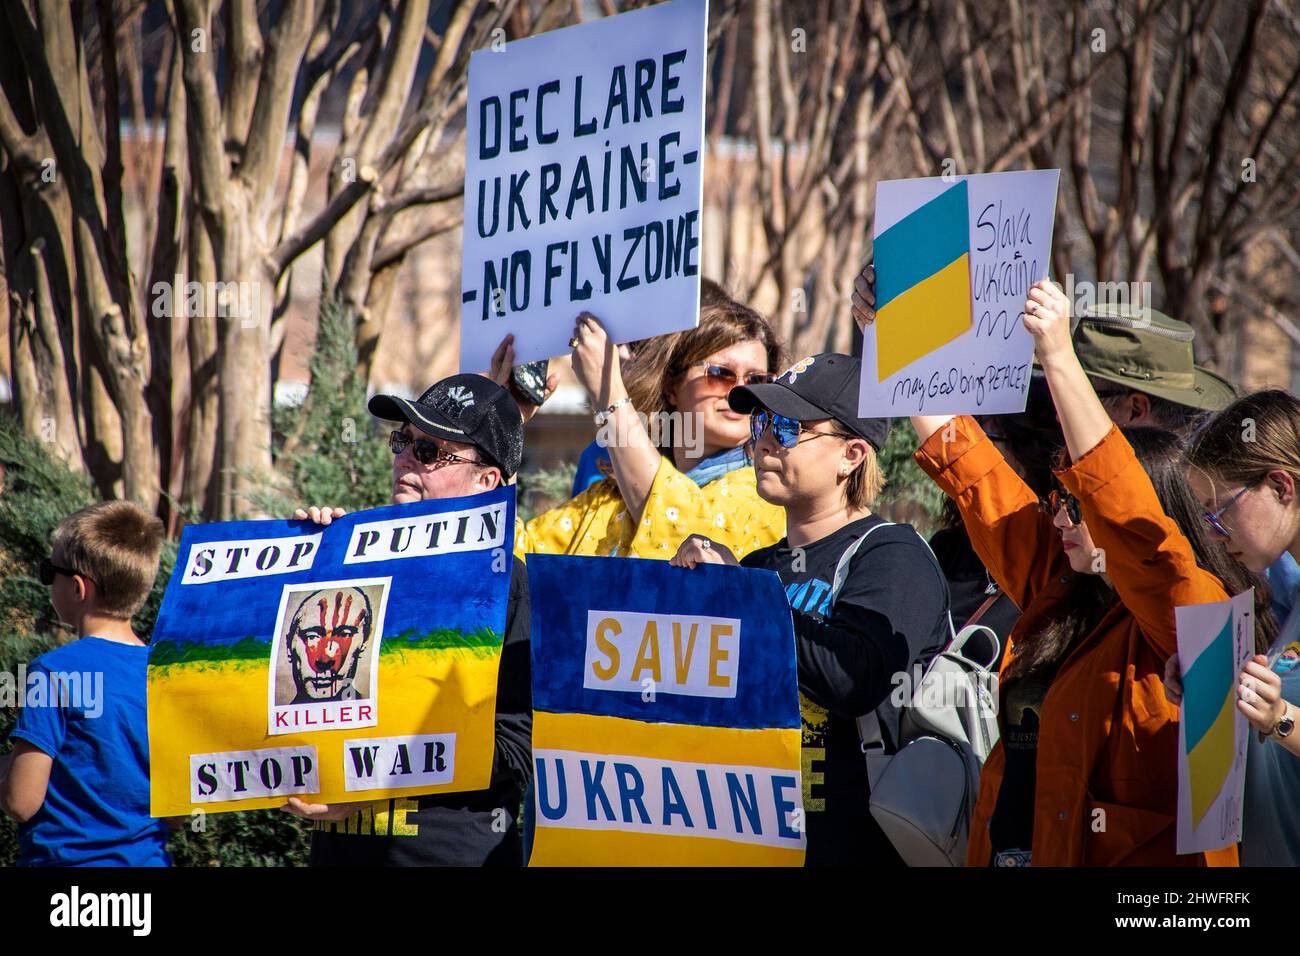 2022_03_05 Tulsa OK USA Support Ucraina Rally con molti segni in blu e giallo - Putins faccia con Killer - Salva Ucraina - No Fly zone e altri Foto Stock